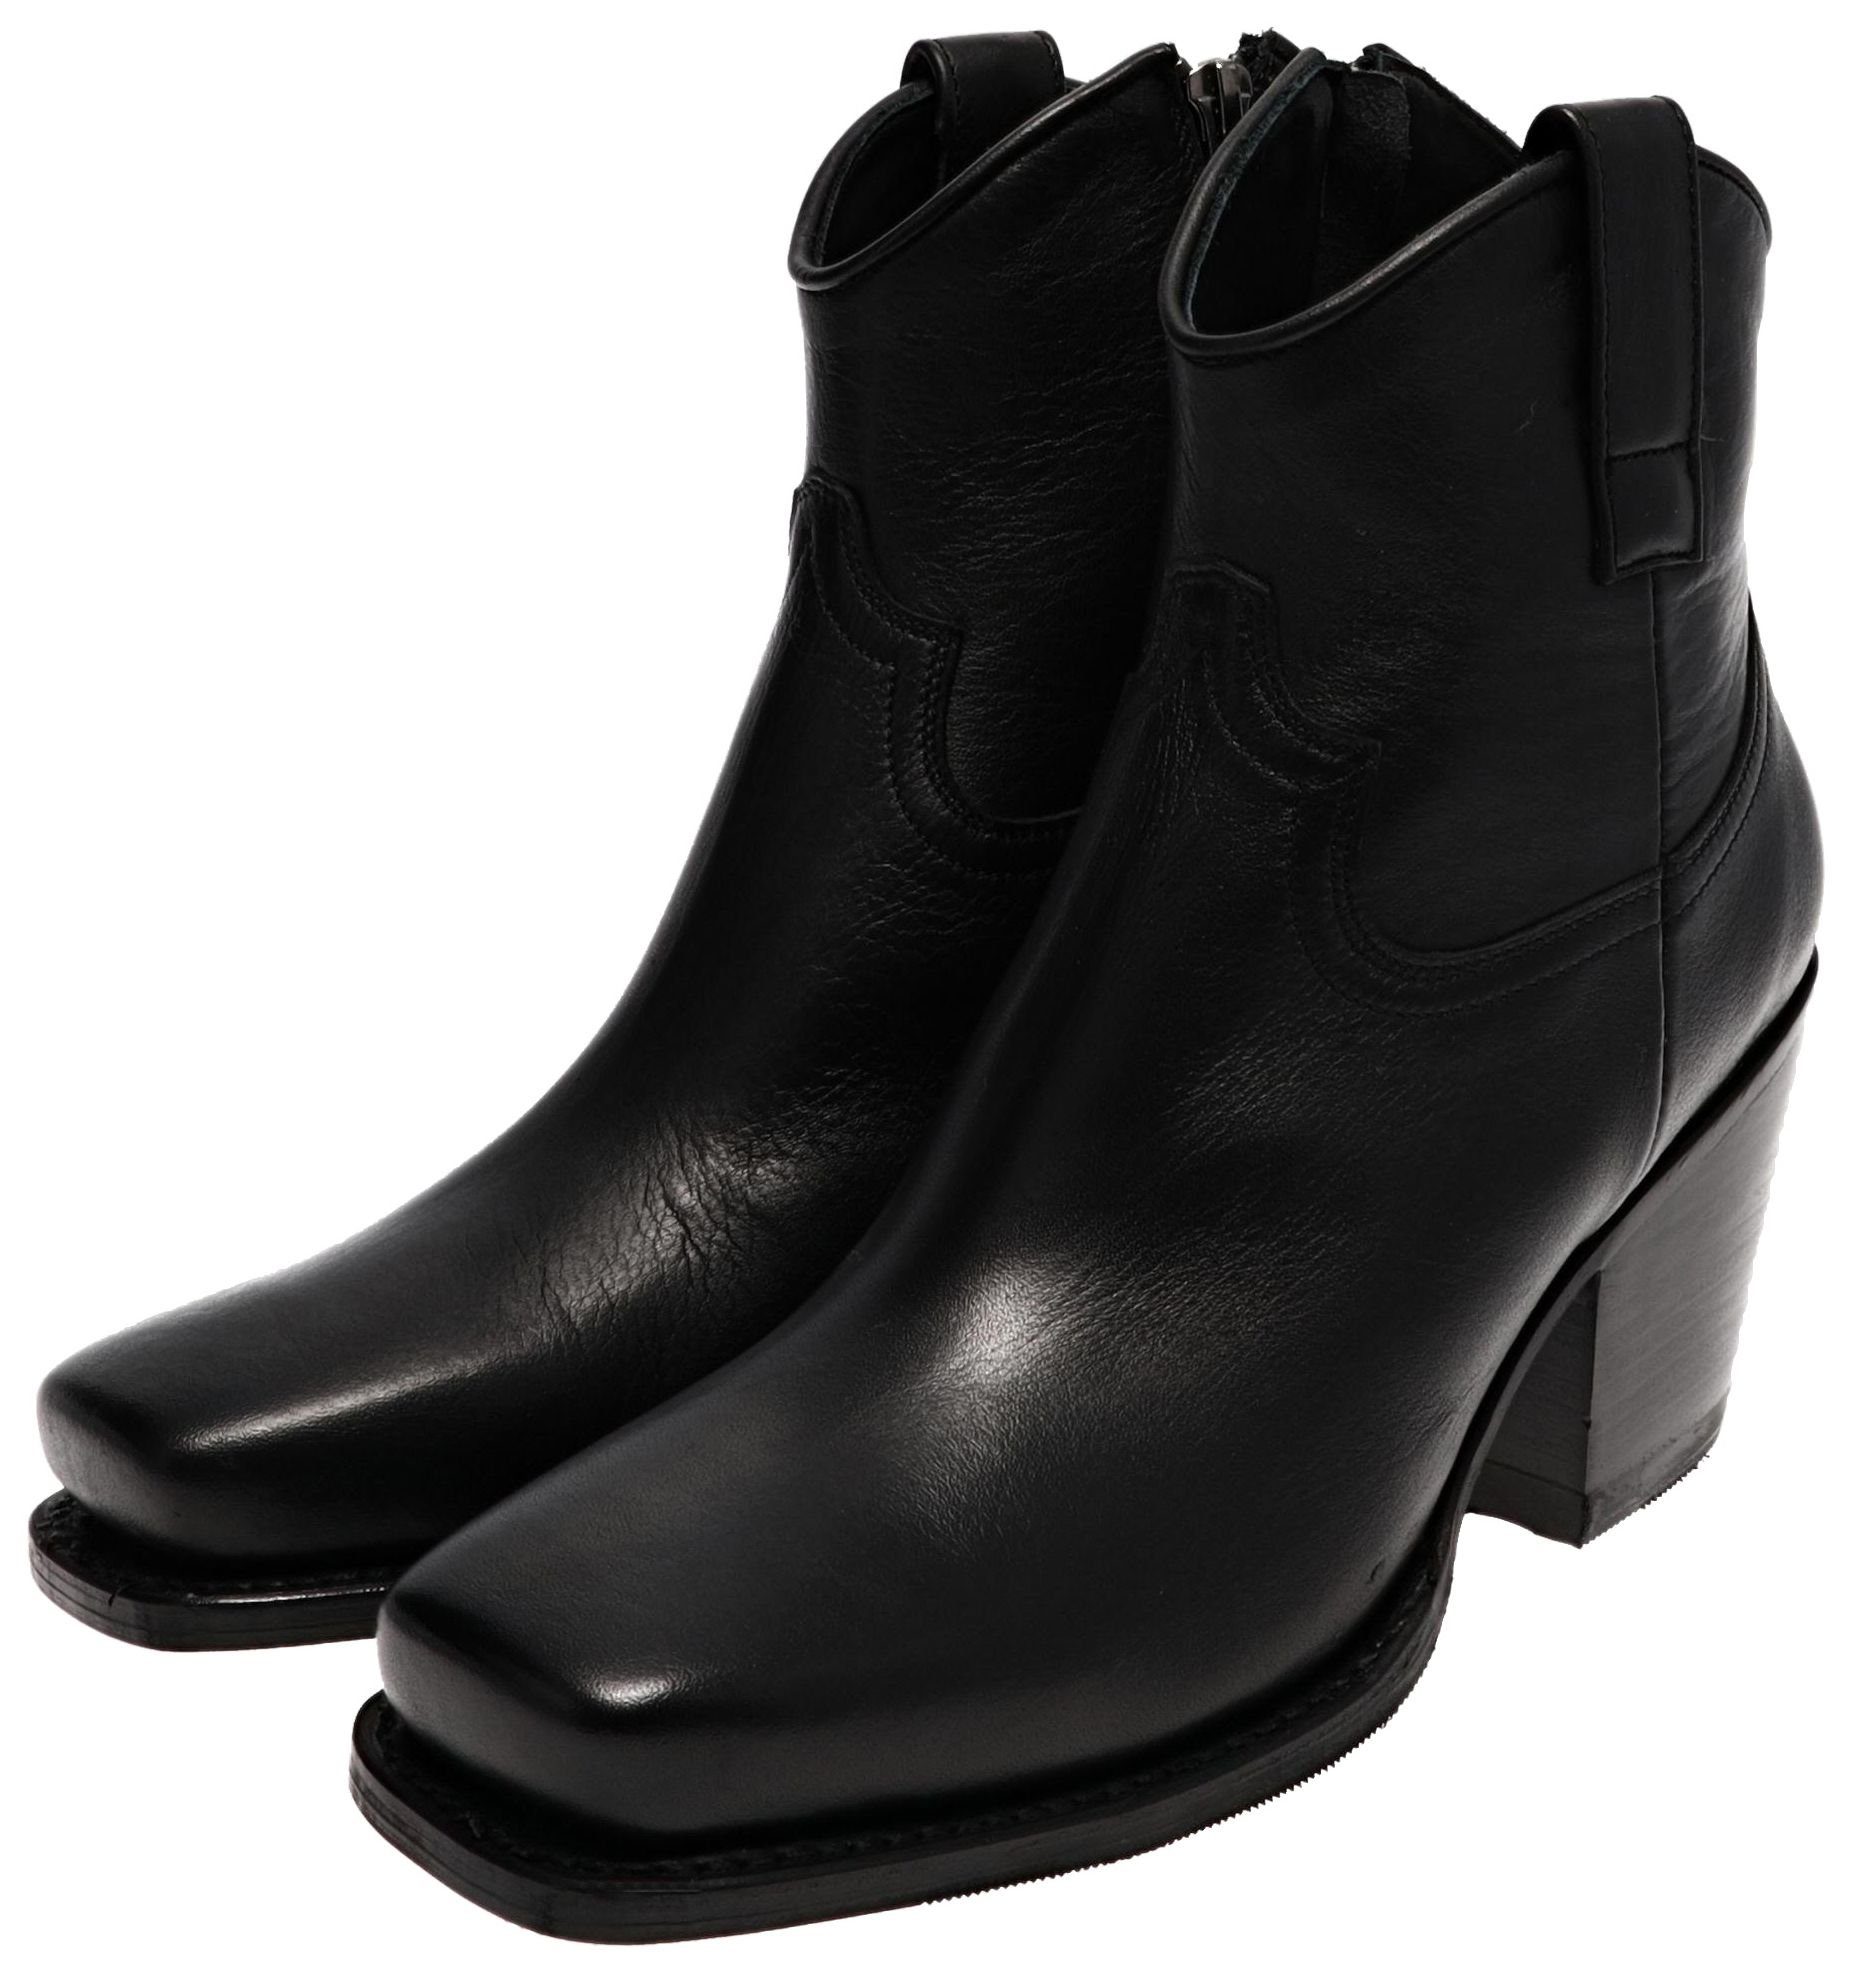 Sendra Boots 15521 LAYA Negro Damen Westernstiefelette Schwarz Stiefelette